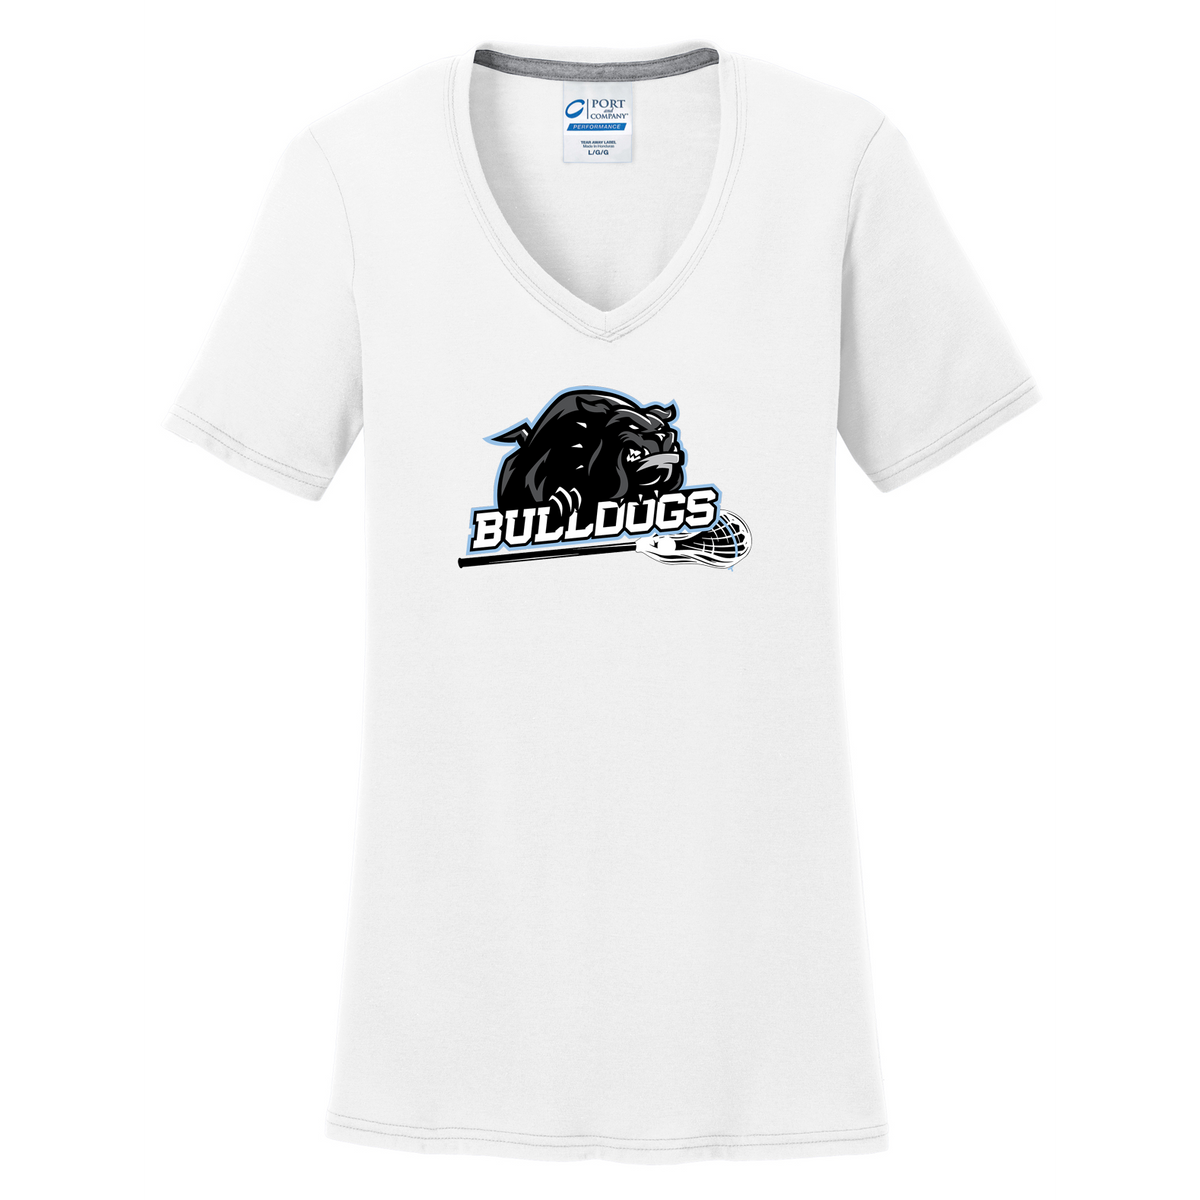 Centennial Bulldogs Women's T-Shirt